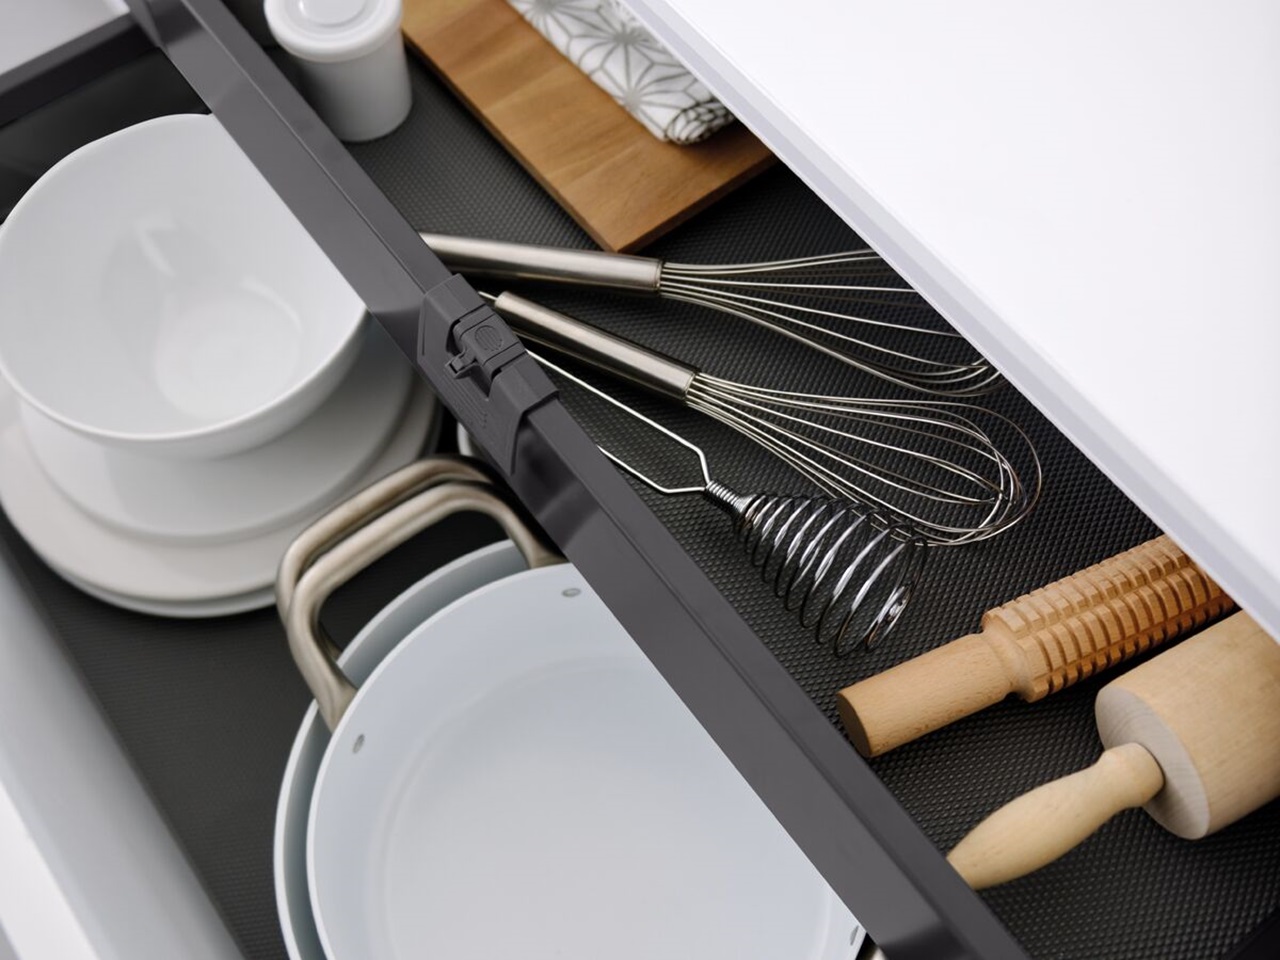 Cacerolero con cajón interior para utensilios de cocina